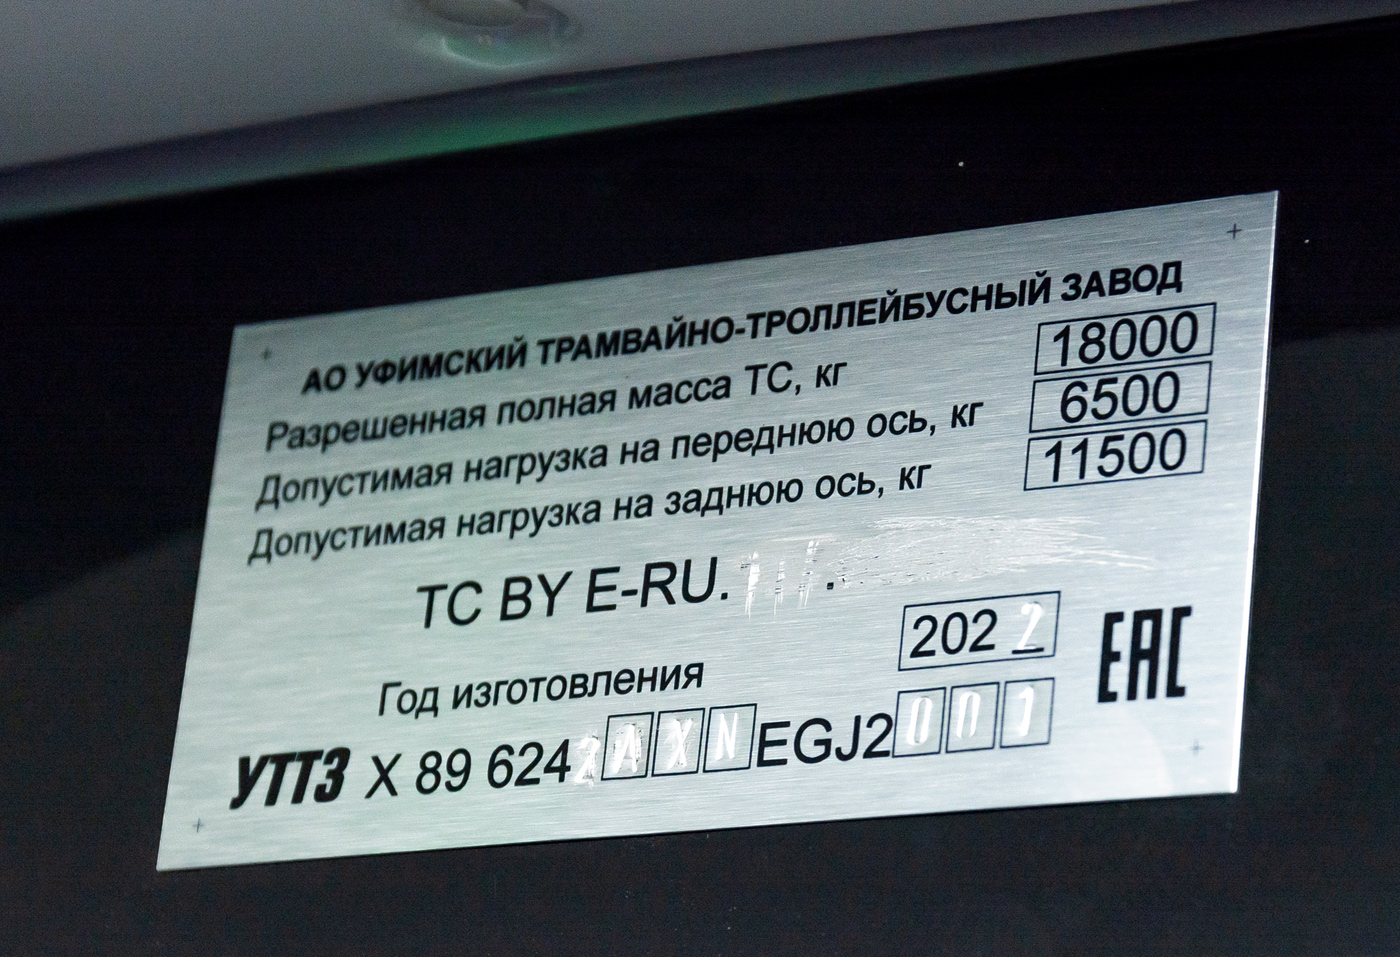 Ufa, UTTZ-6242 — 6242; Ufa — Nameplates; Ufa — New BTZ trolleybuses